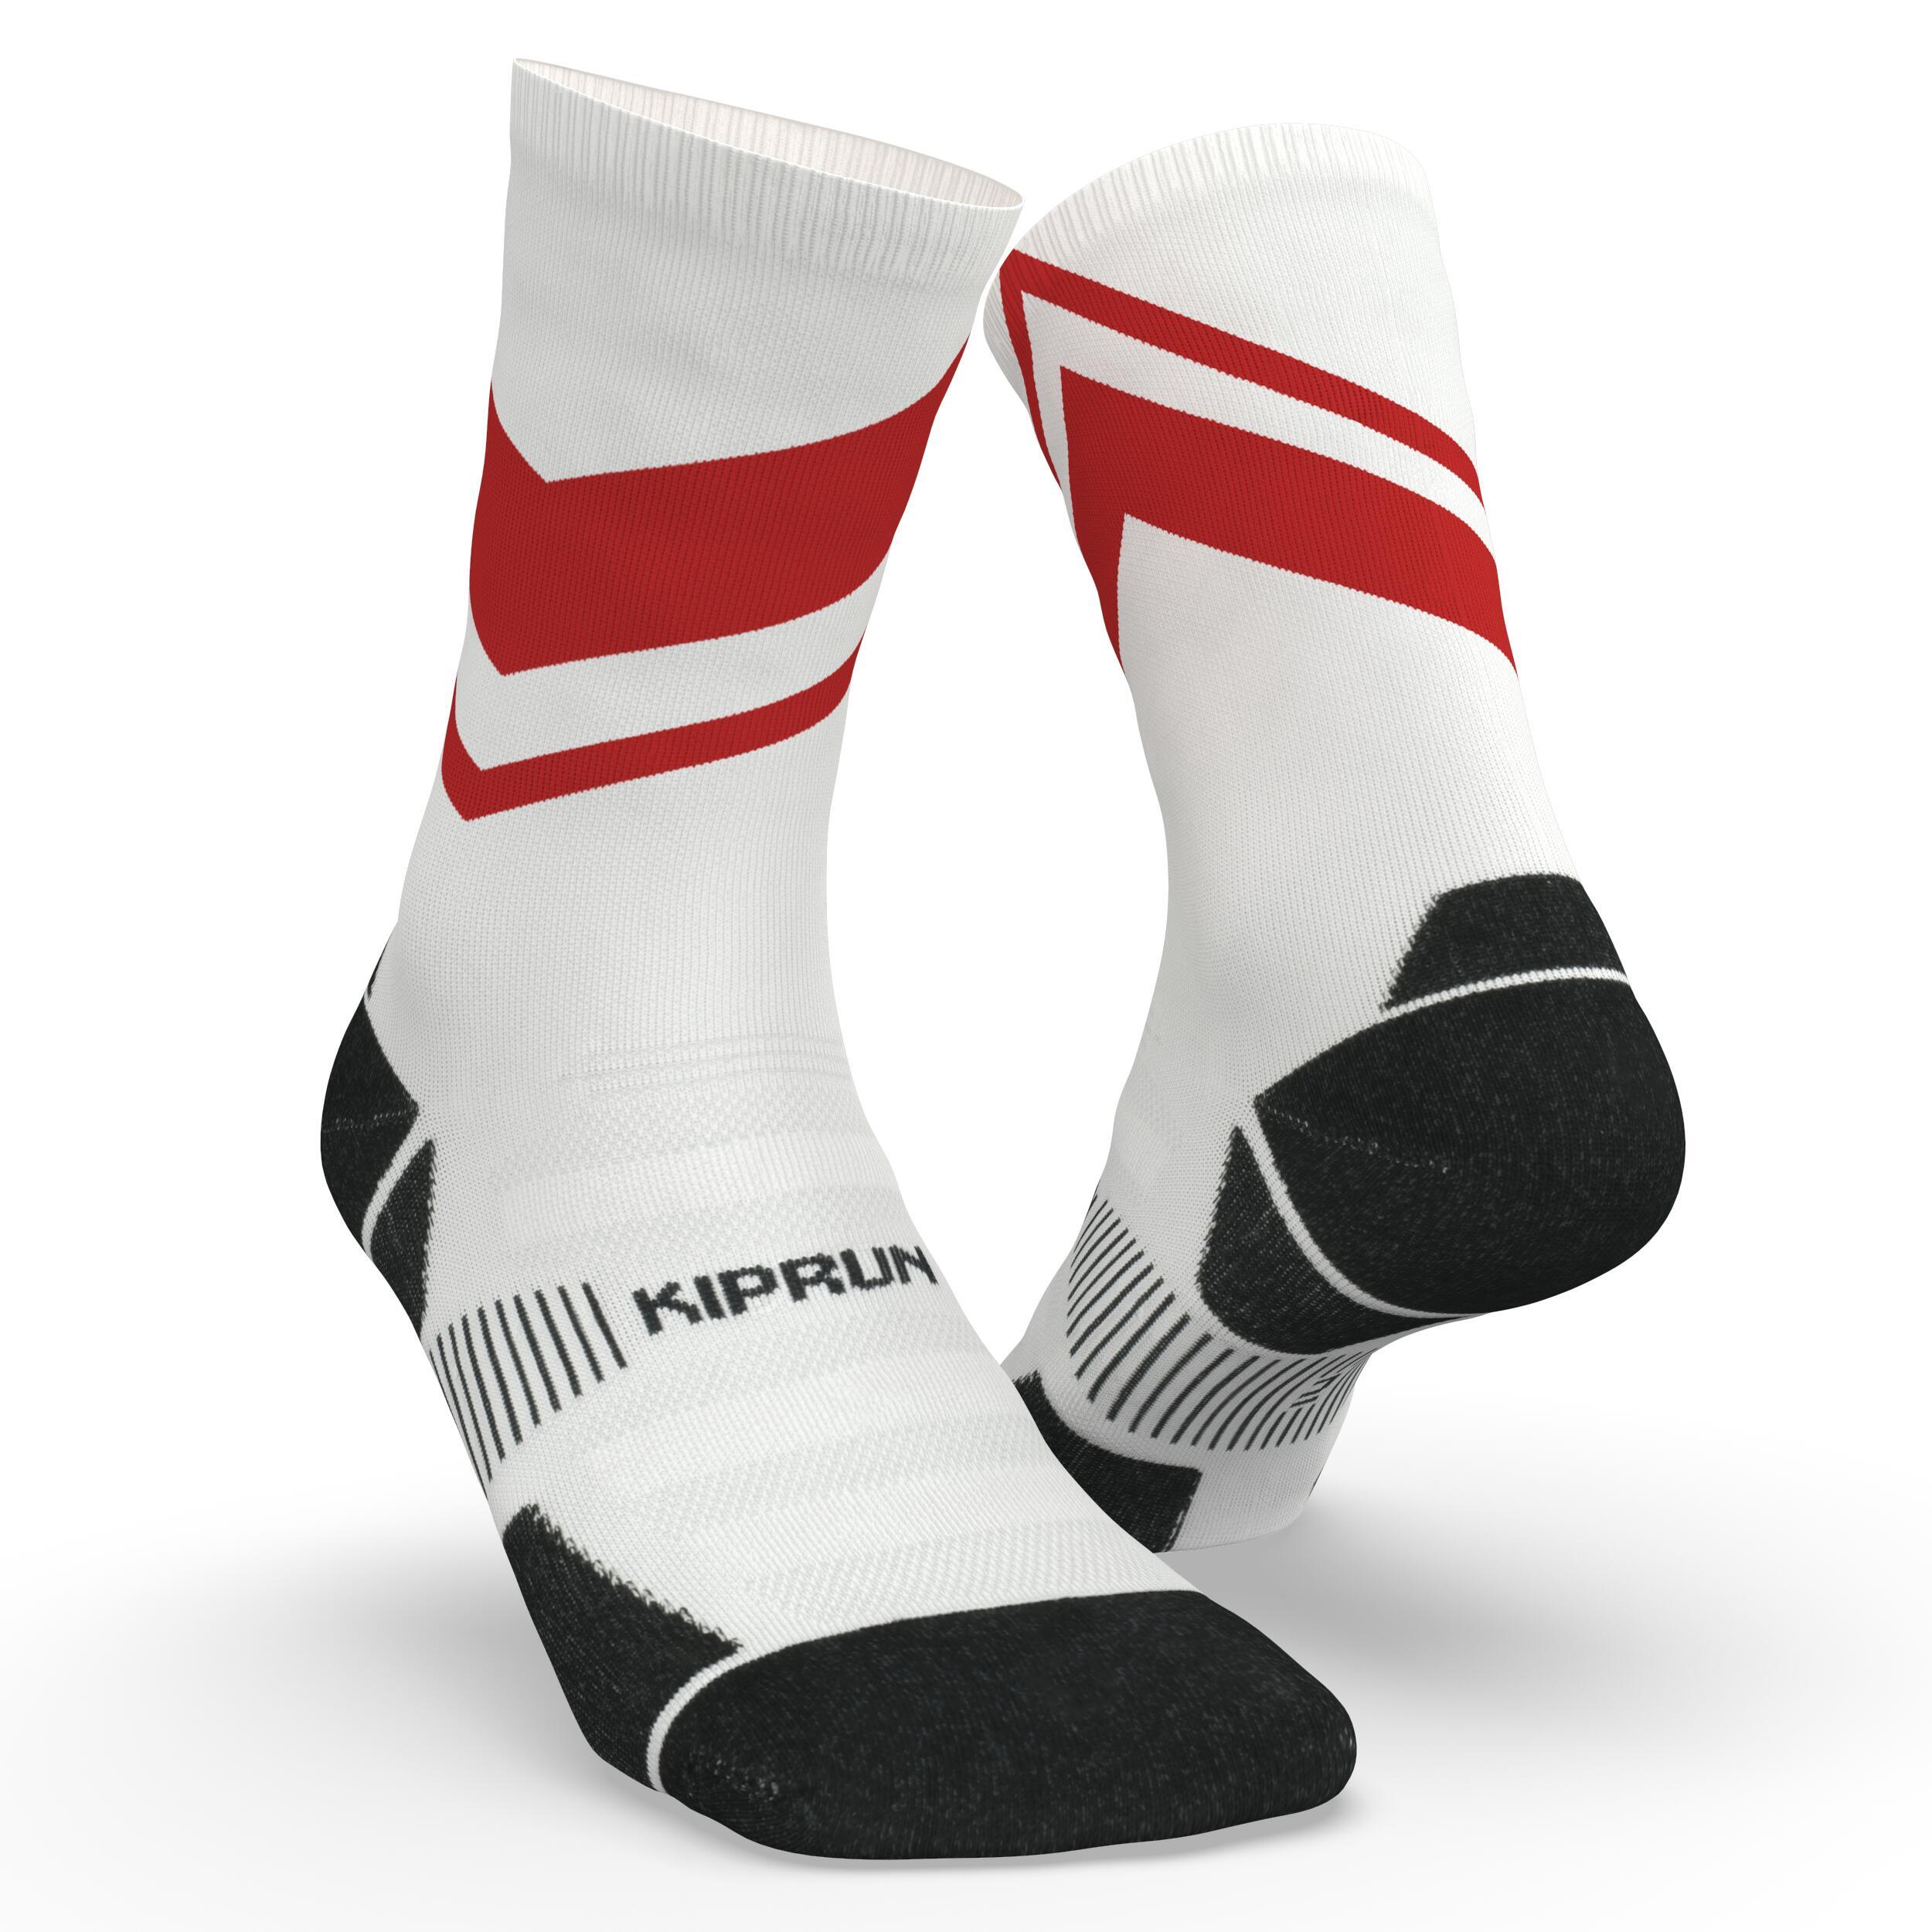 Run900 Mid-Calf Thick Running Socks - White/Red 1/7